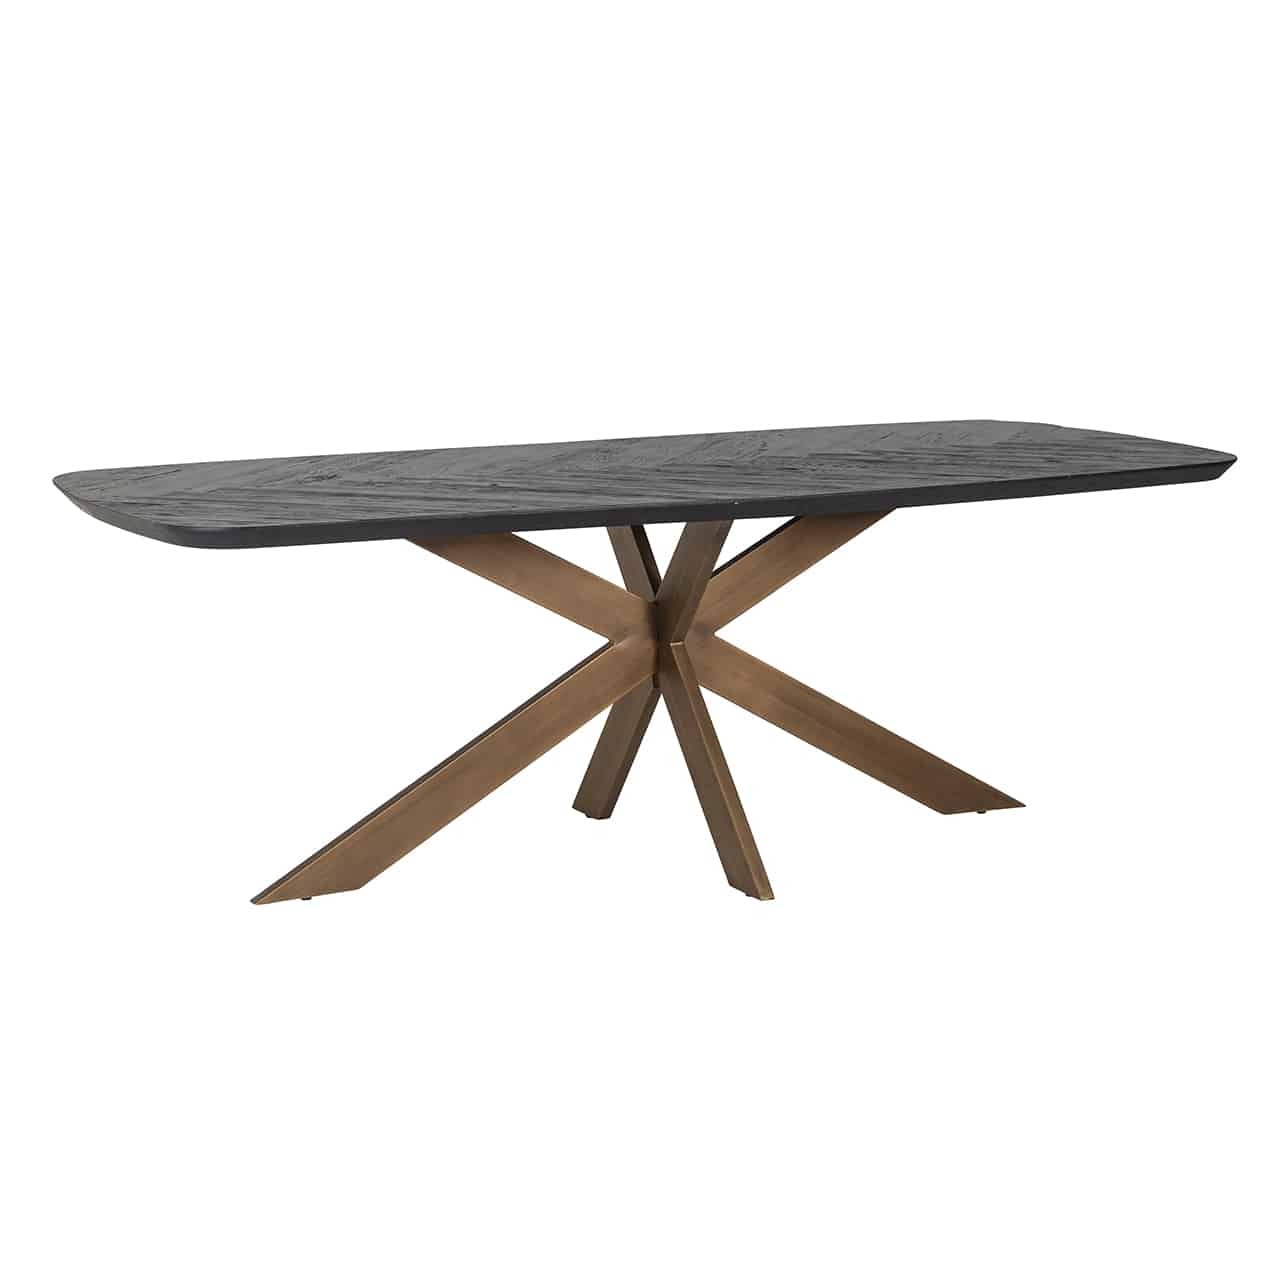 Esstisch mit einem Metallgestell aus sternförmig angeordneten goldenen Planken; darauf eine quadratische Tischplatte mit abgerundeten Ecken. aus recyceltem Holz.